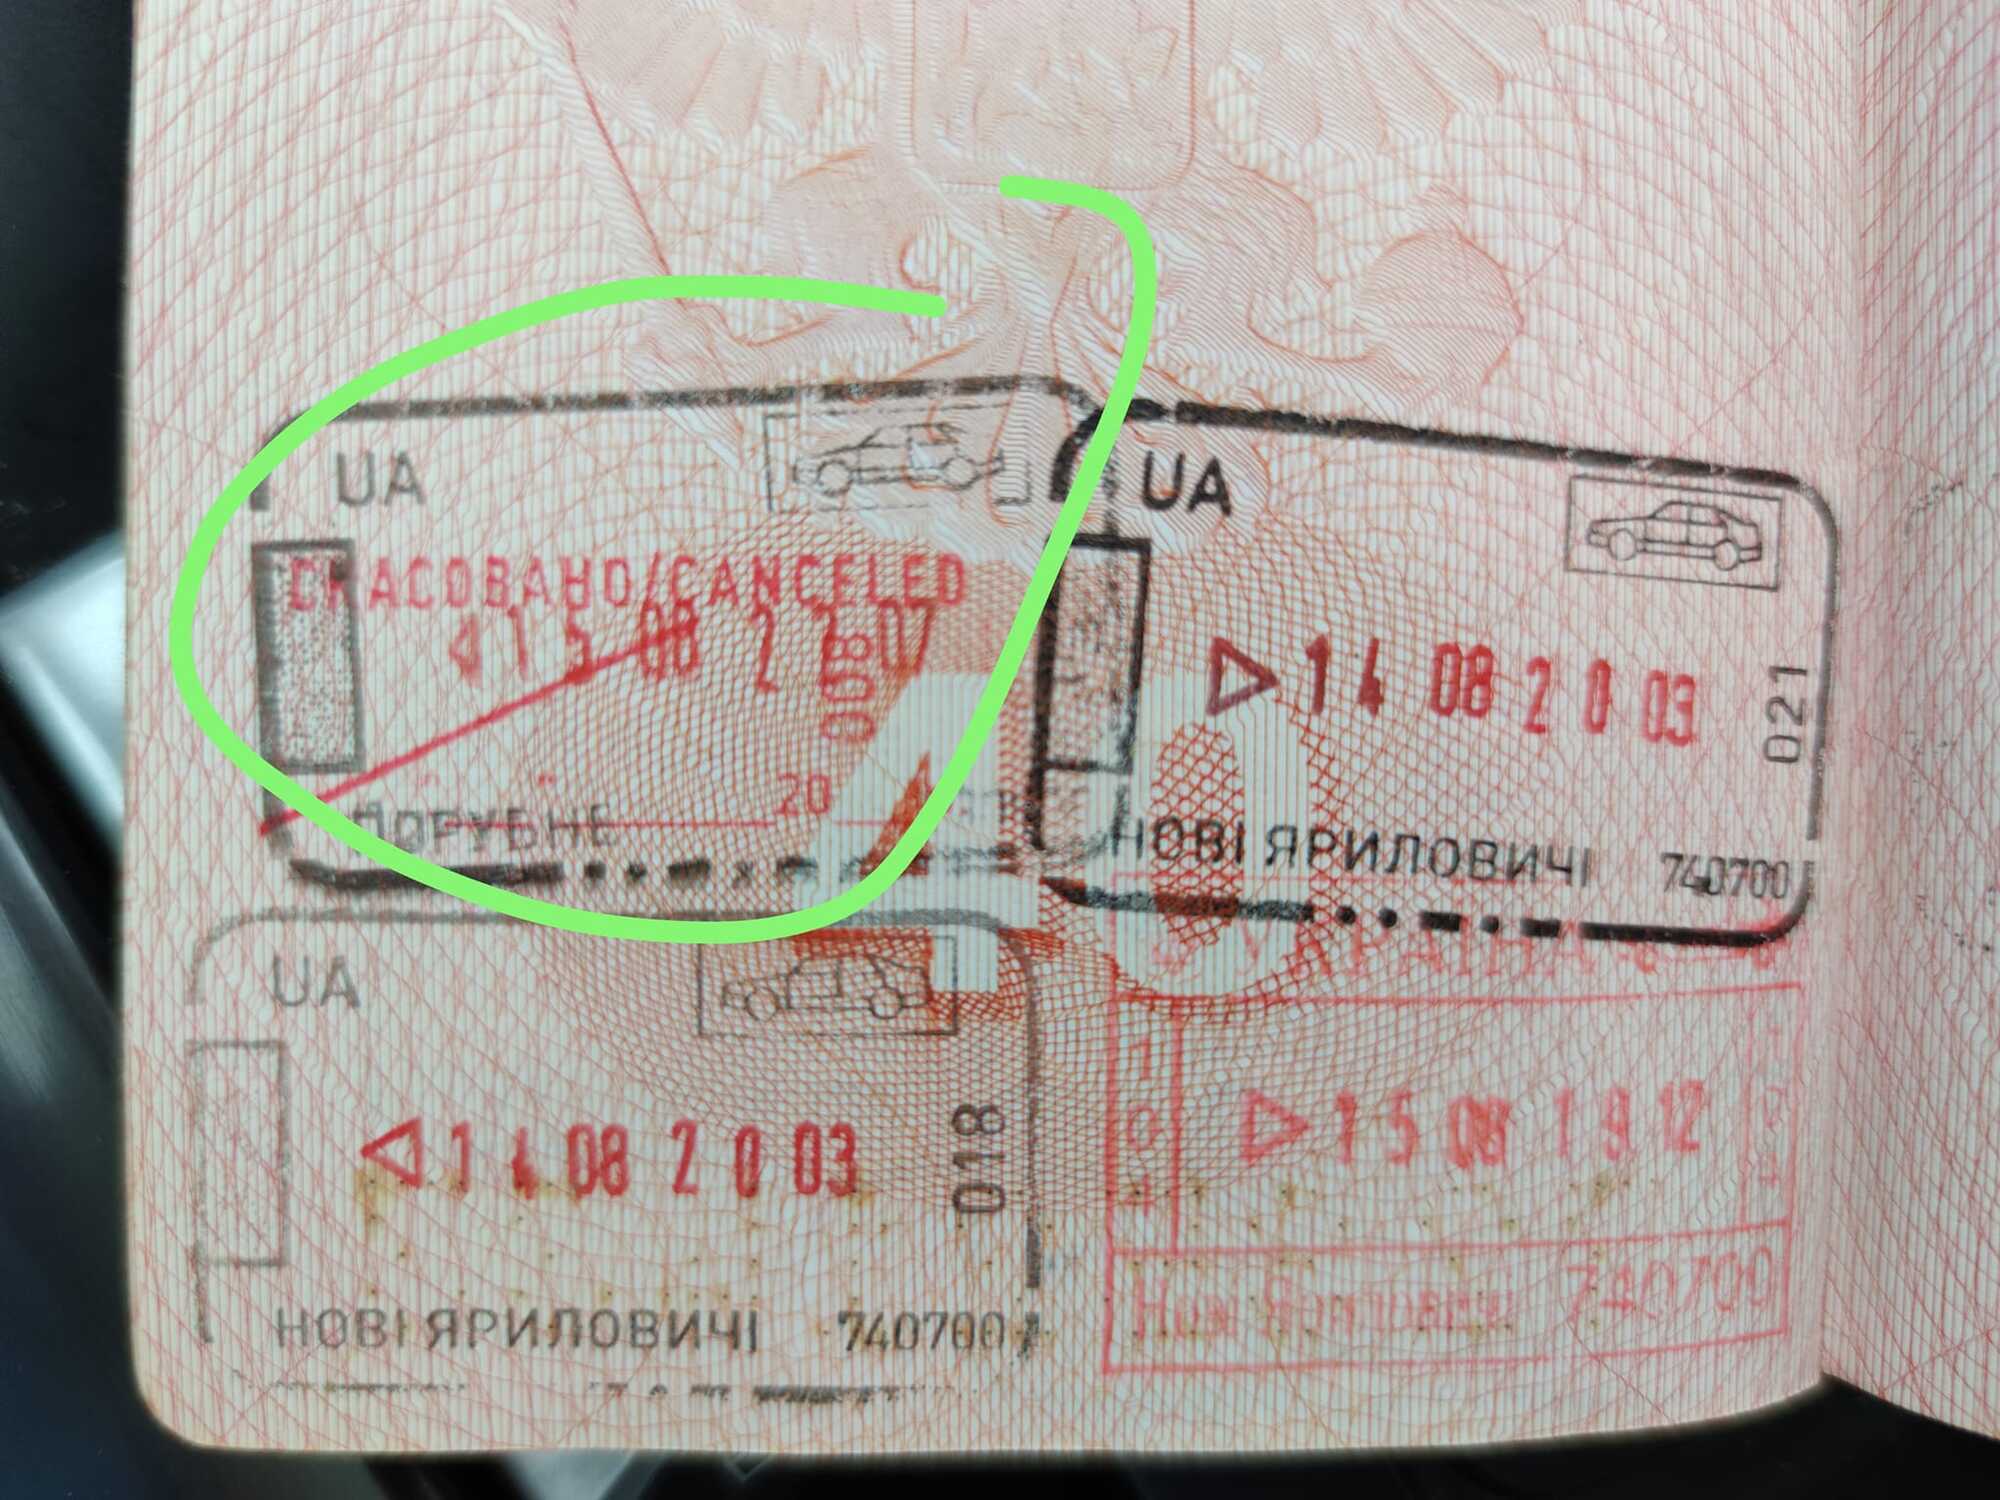 Россиянина с видом на жительство в Украине не пустили в Румынию: в паспорт поставили штамп о корабле. Видео